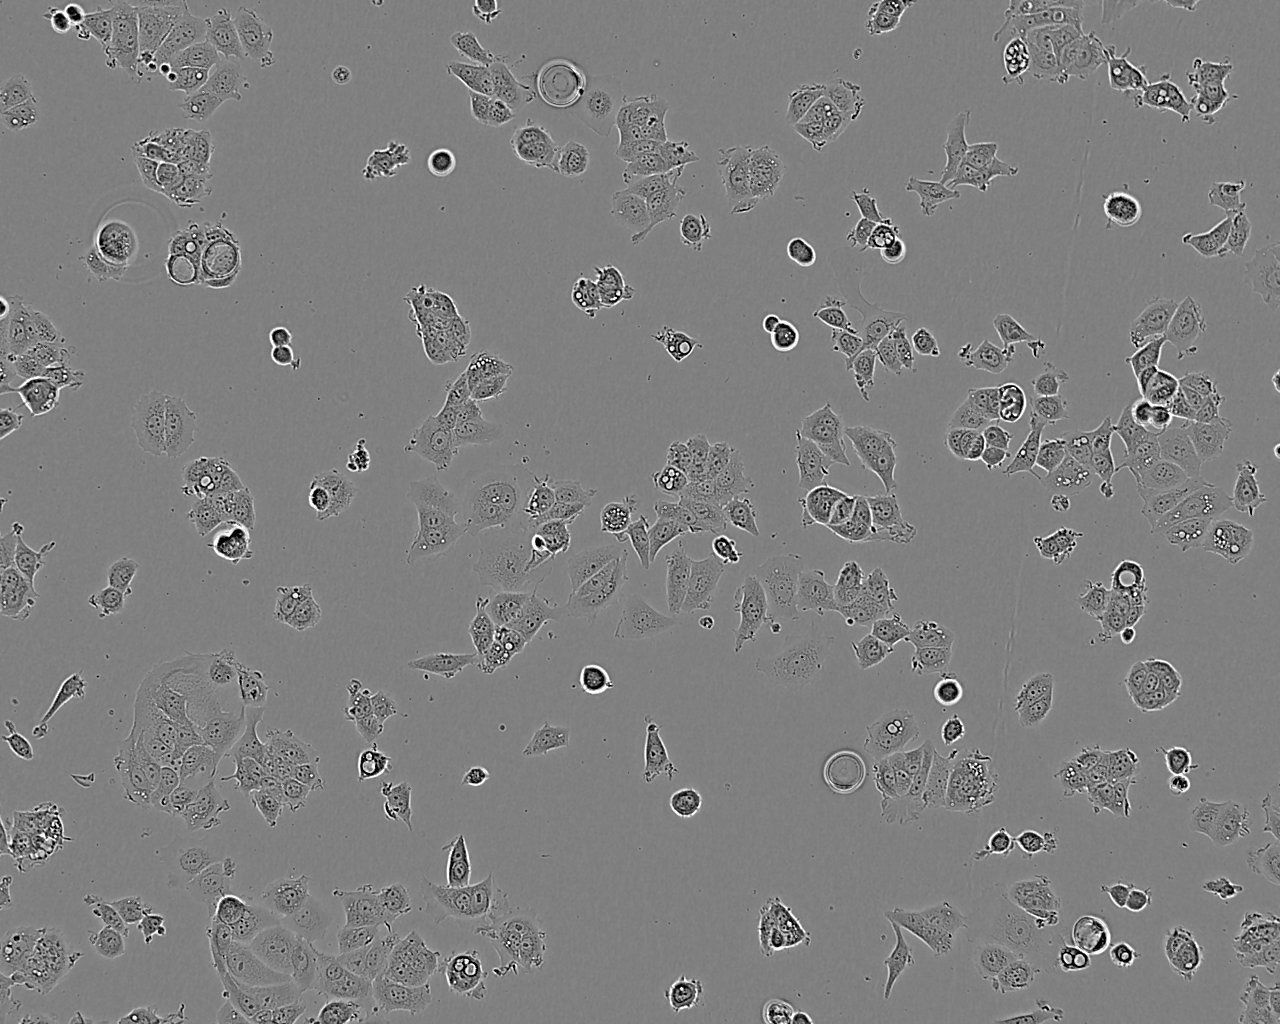 NCI-H1563 Cells|人胚肺细胞系